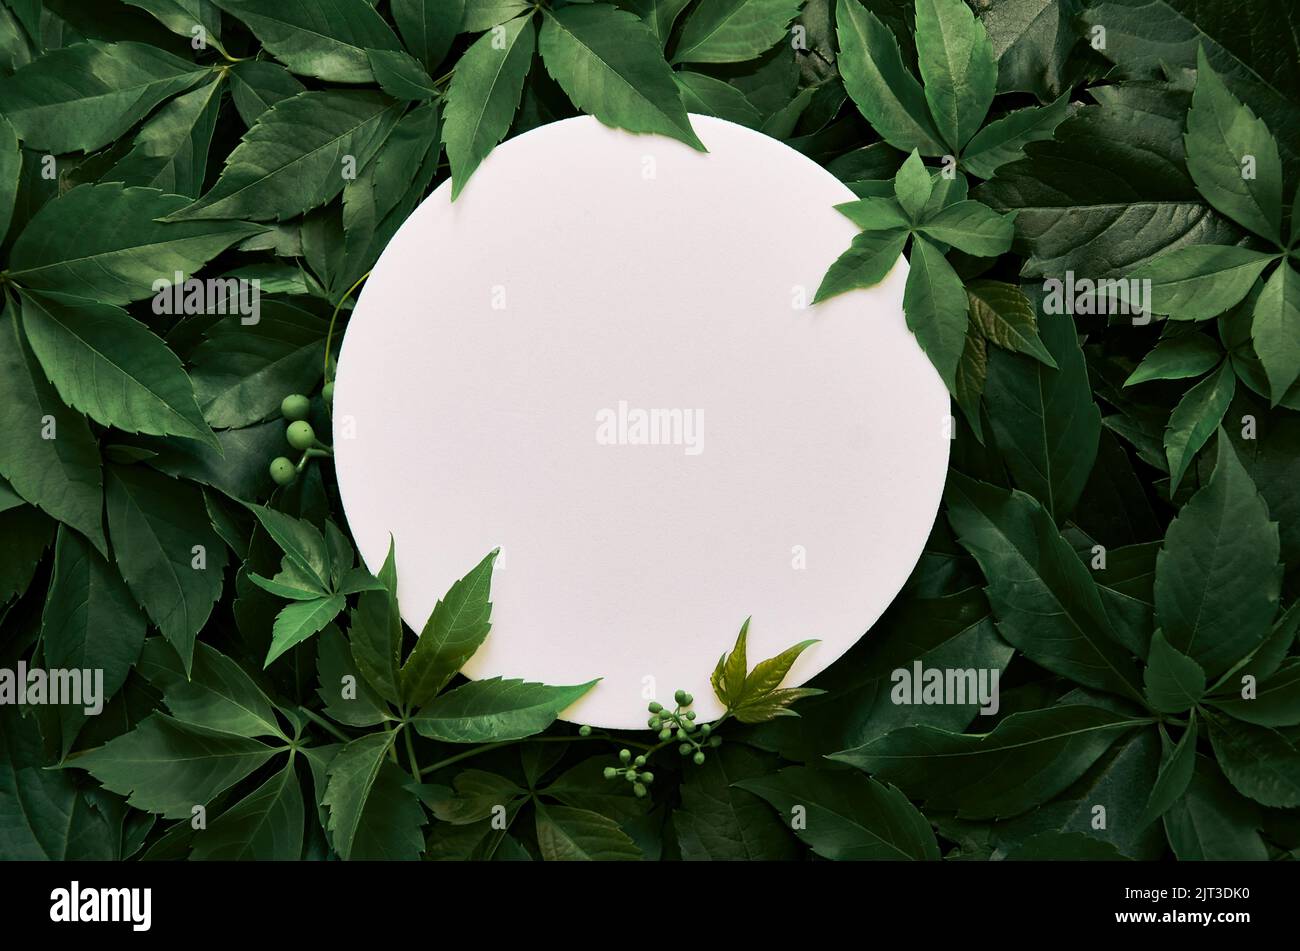 Weiße runde Schablone für Naturkosmetikwerbung auf grünem Blatthintergrund. Stockfoto